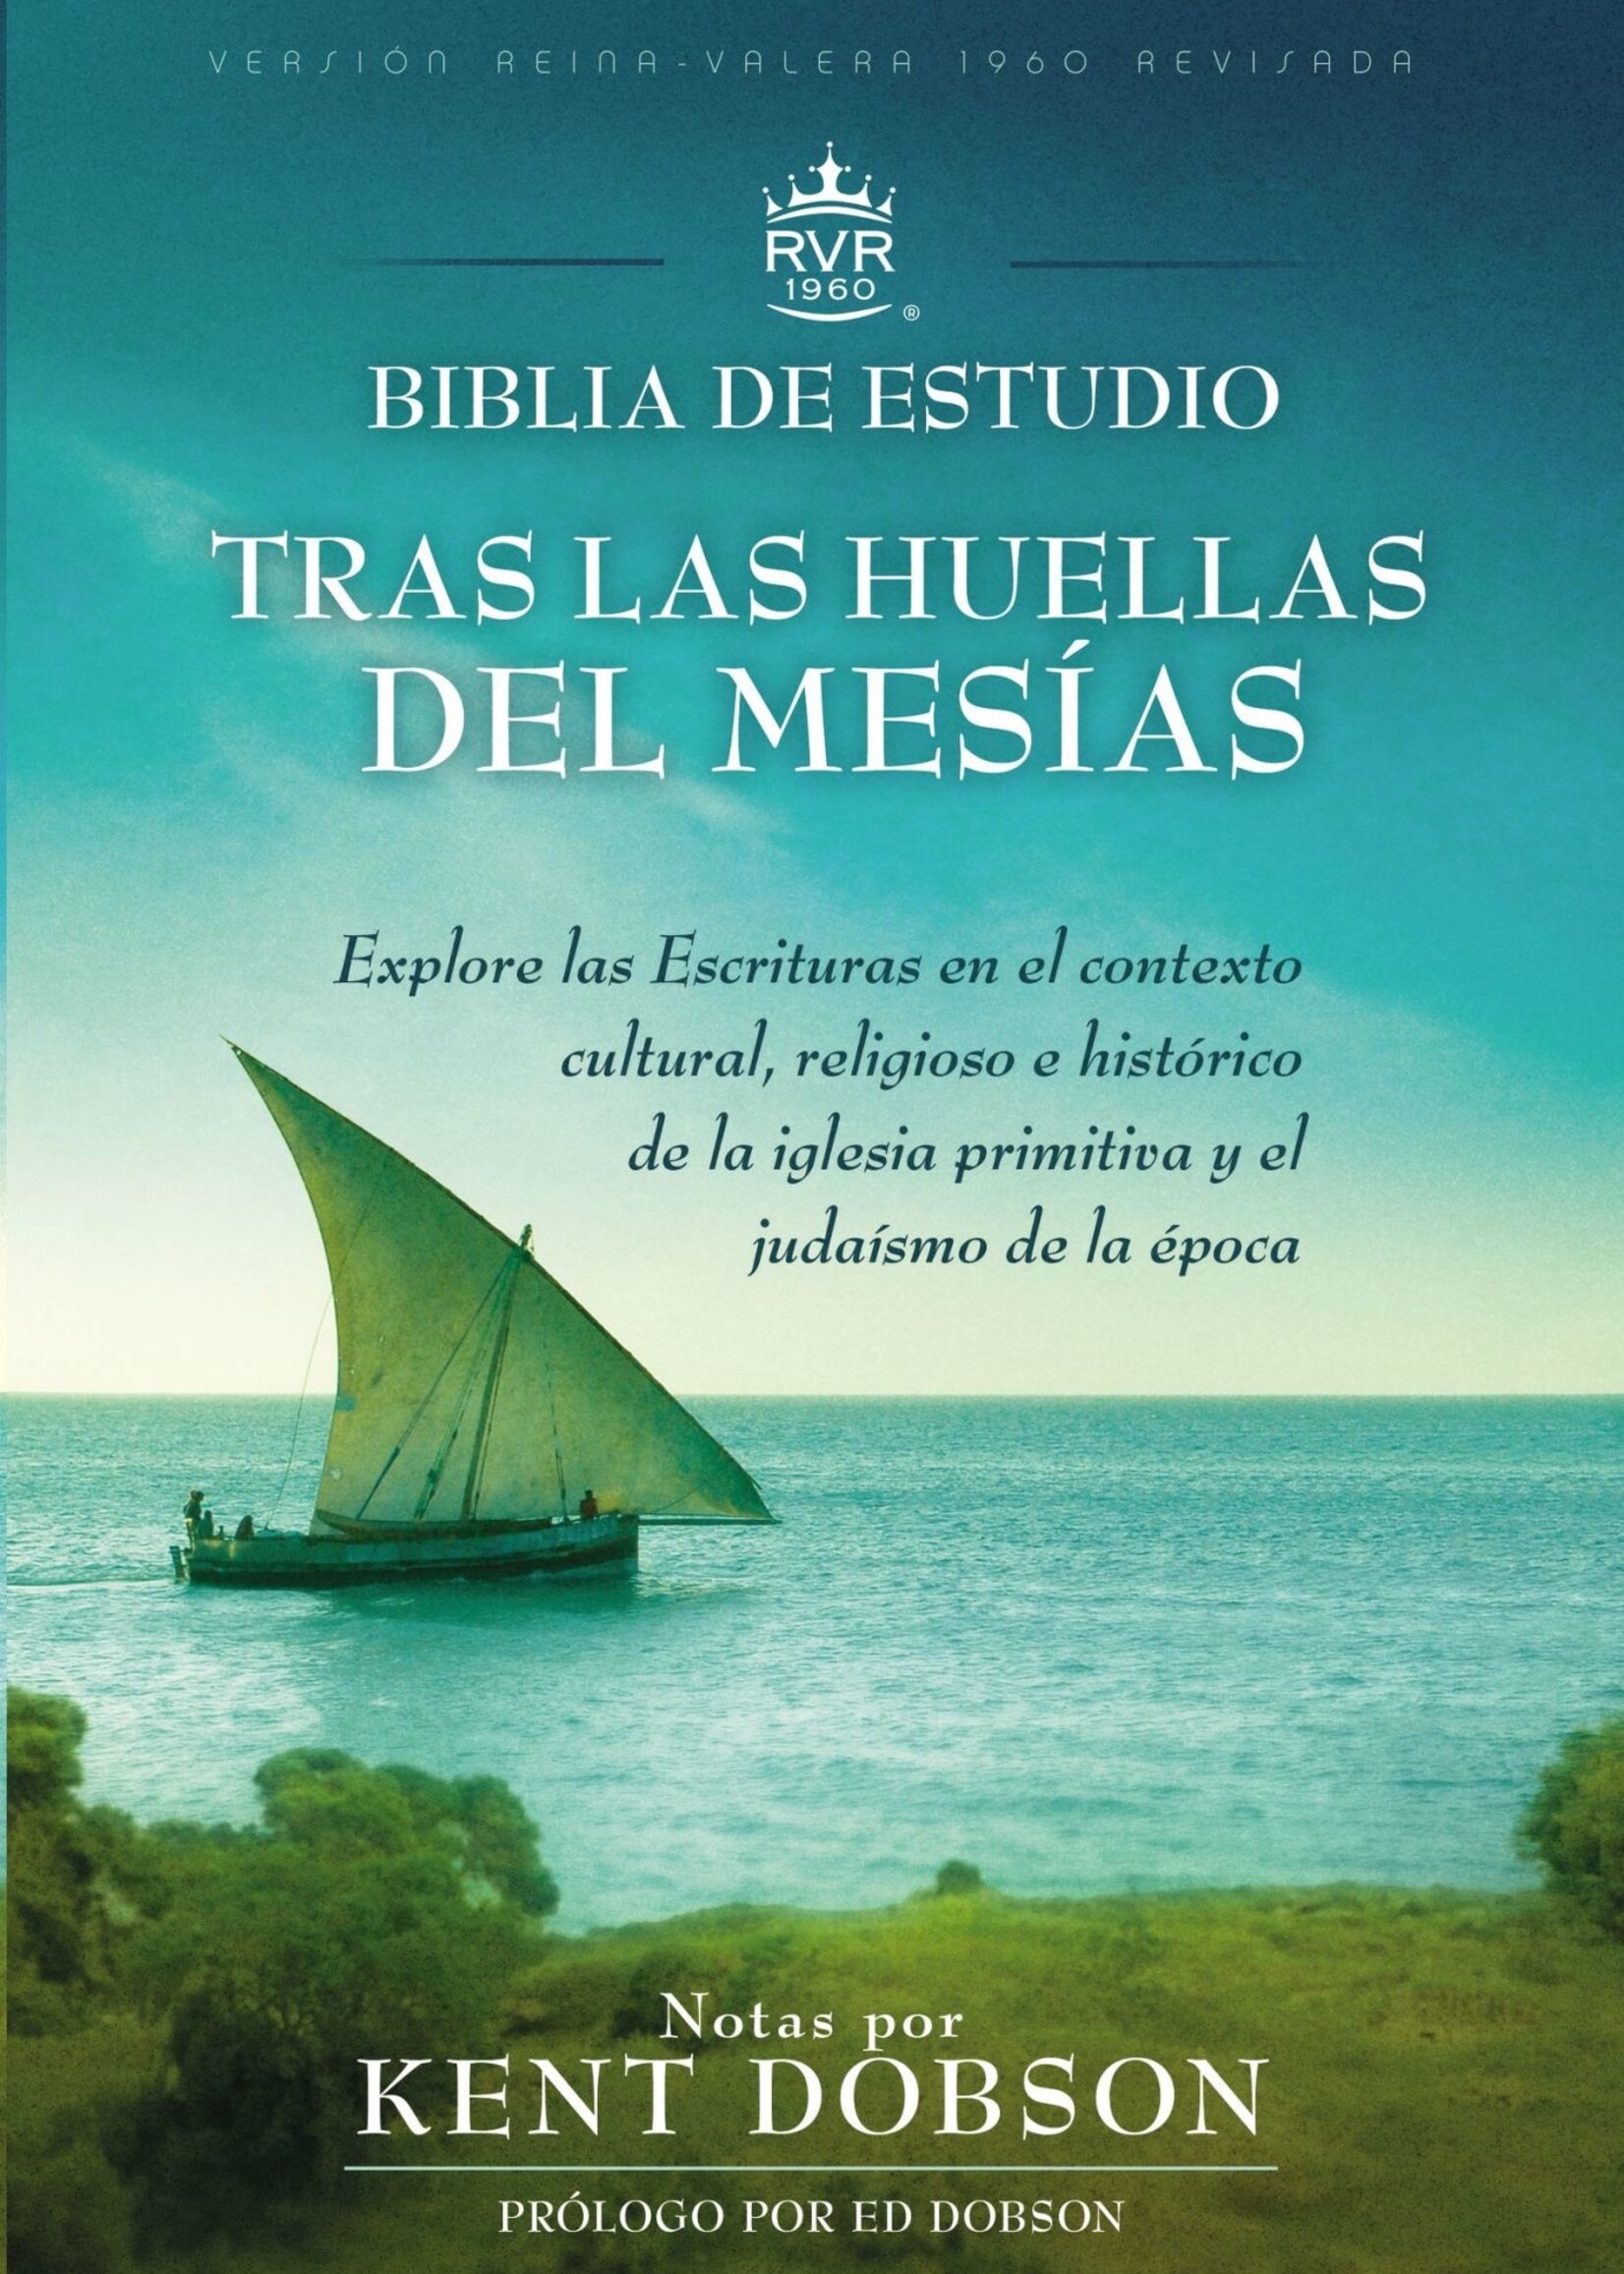 EDITORIAL VIDA BIBLIA DE ESTUDIO RVR60 TRAS LAS HUELLAS DEL MESIAS